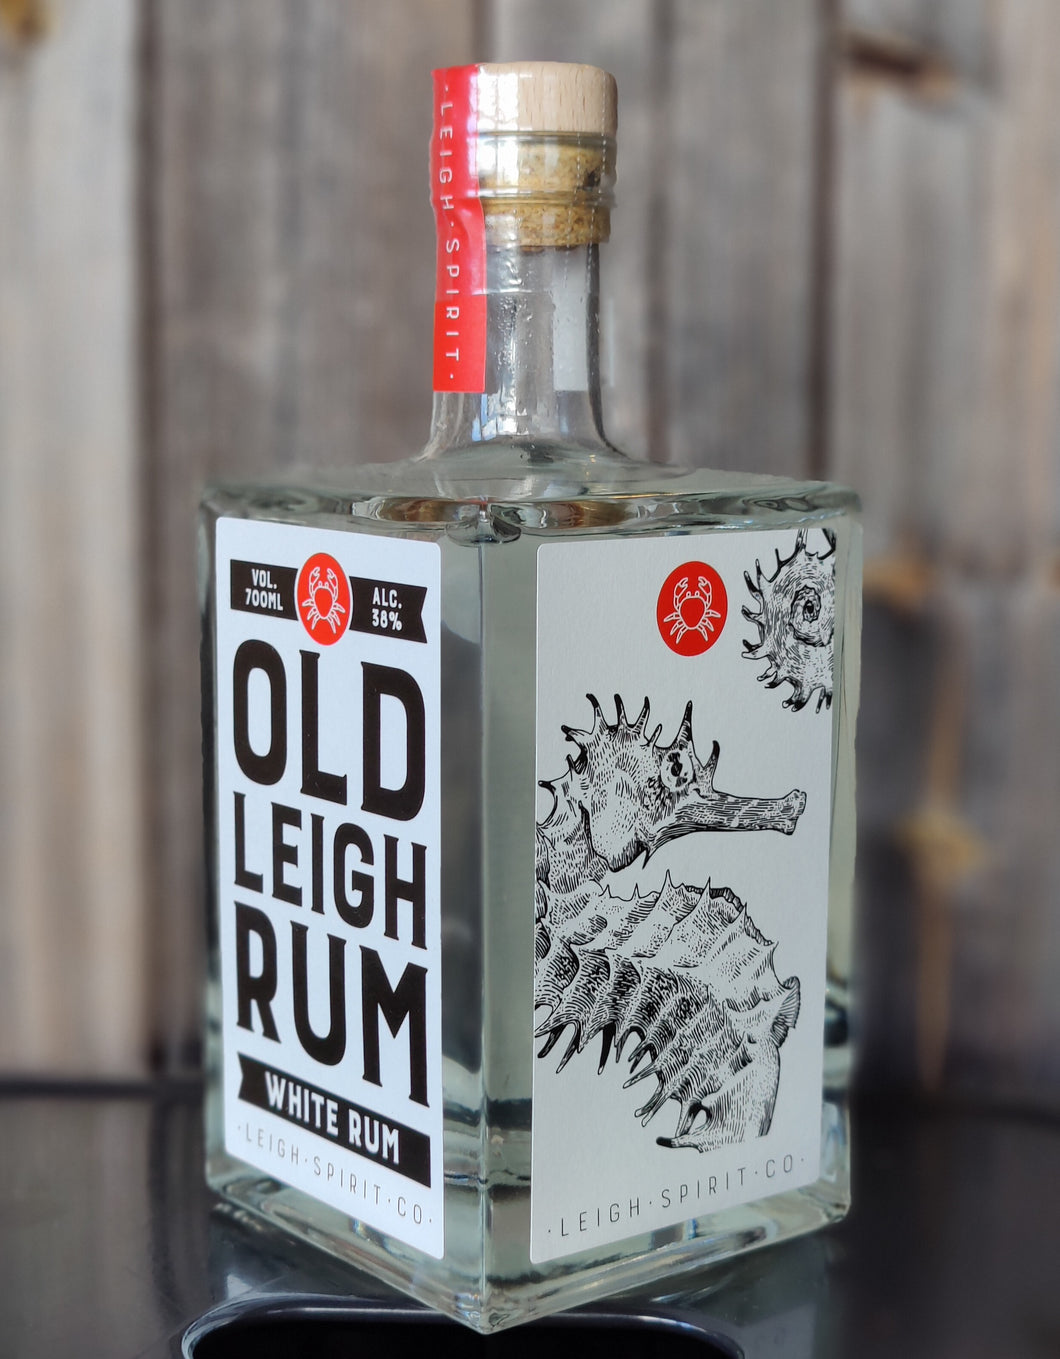 Leigh Spirit Co - Old Leigh White Rum